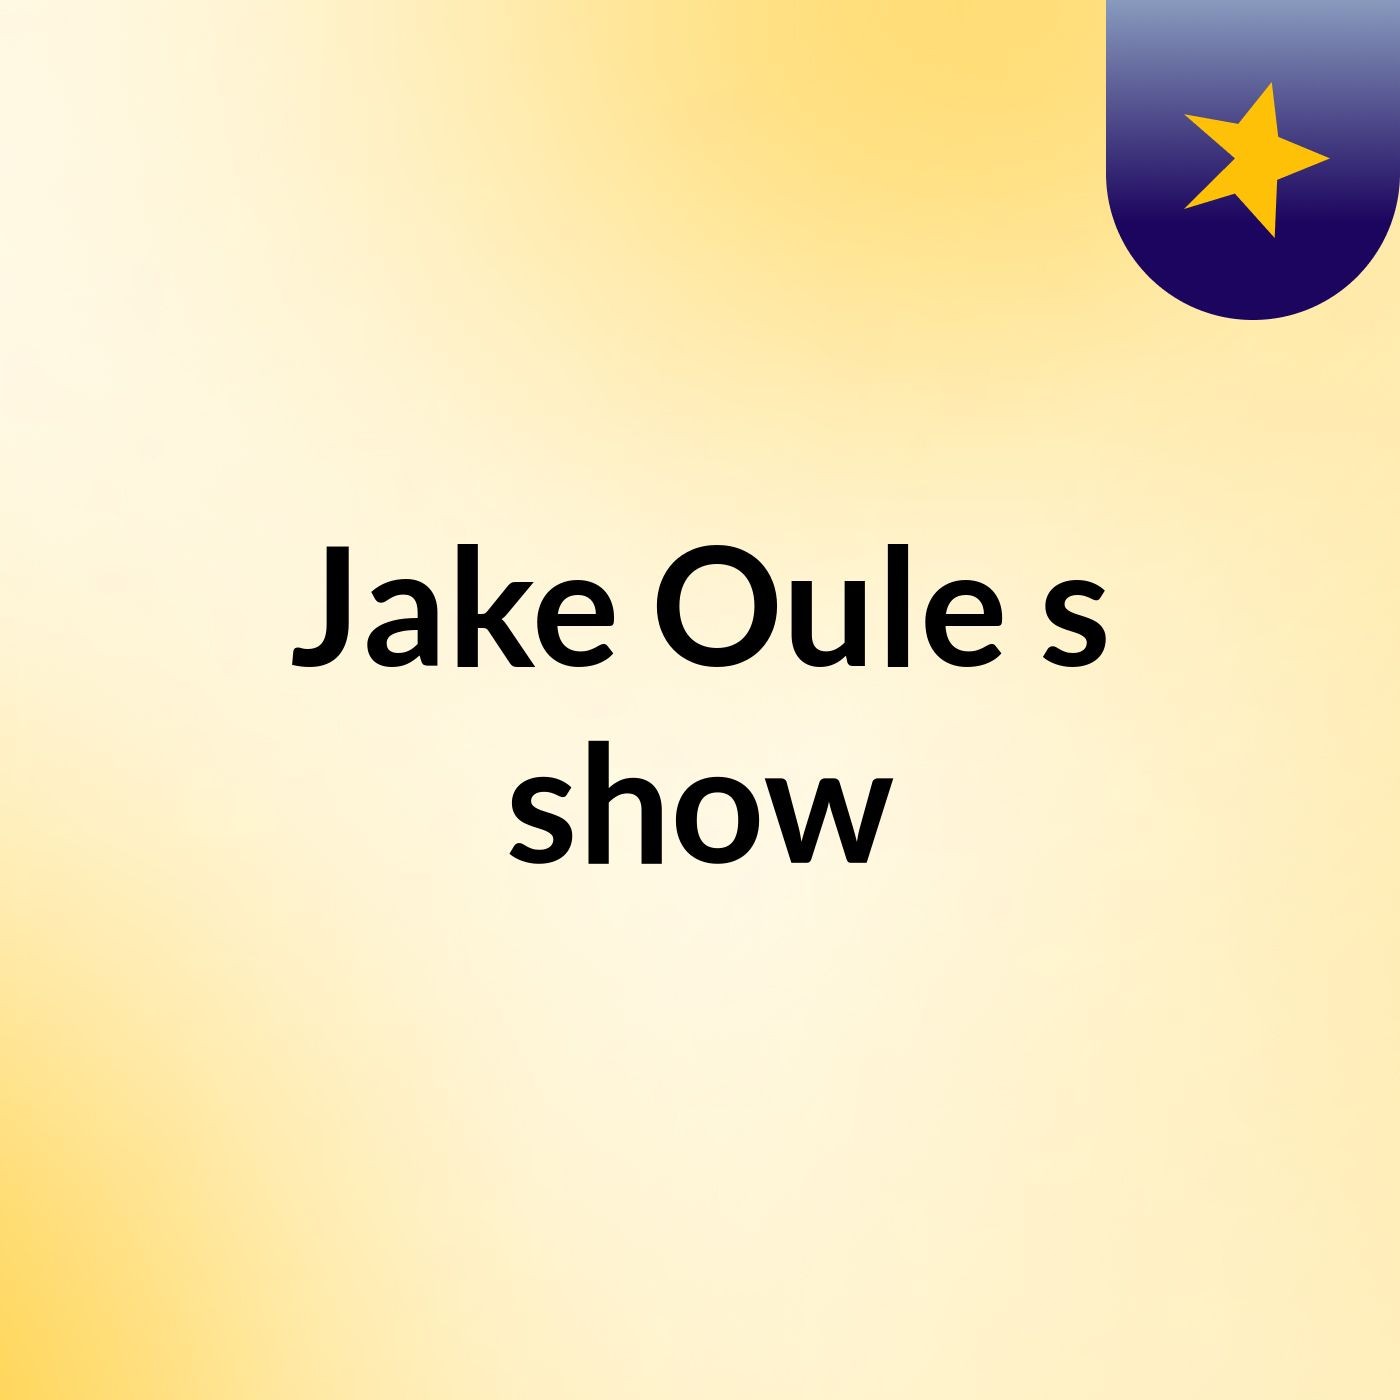 Jake Oule's show